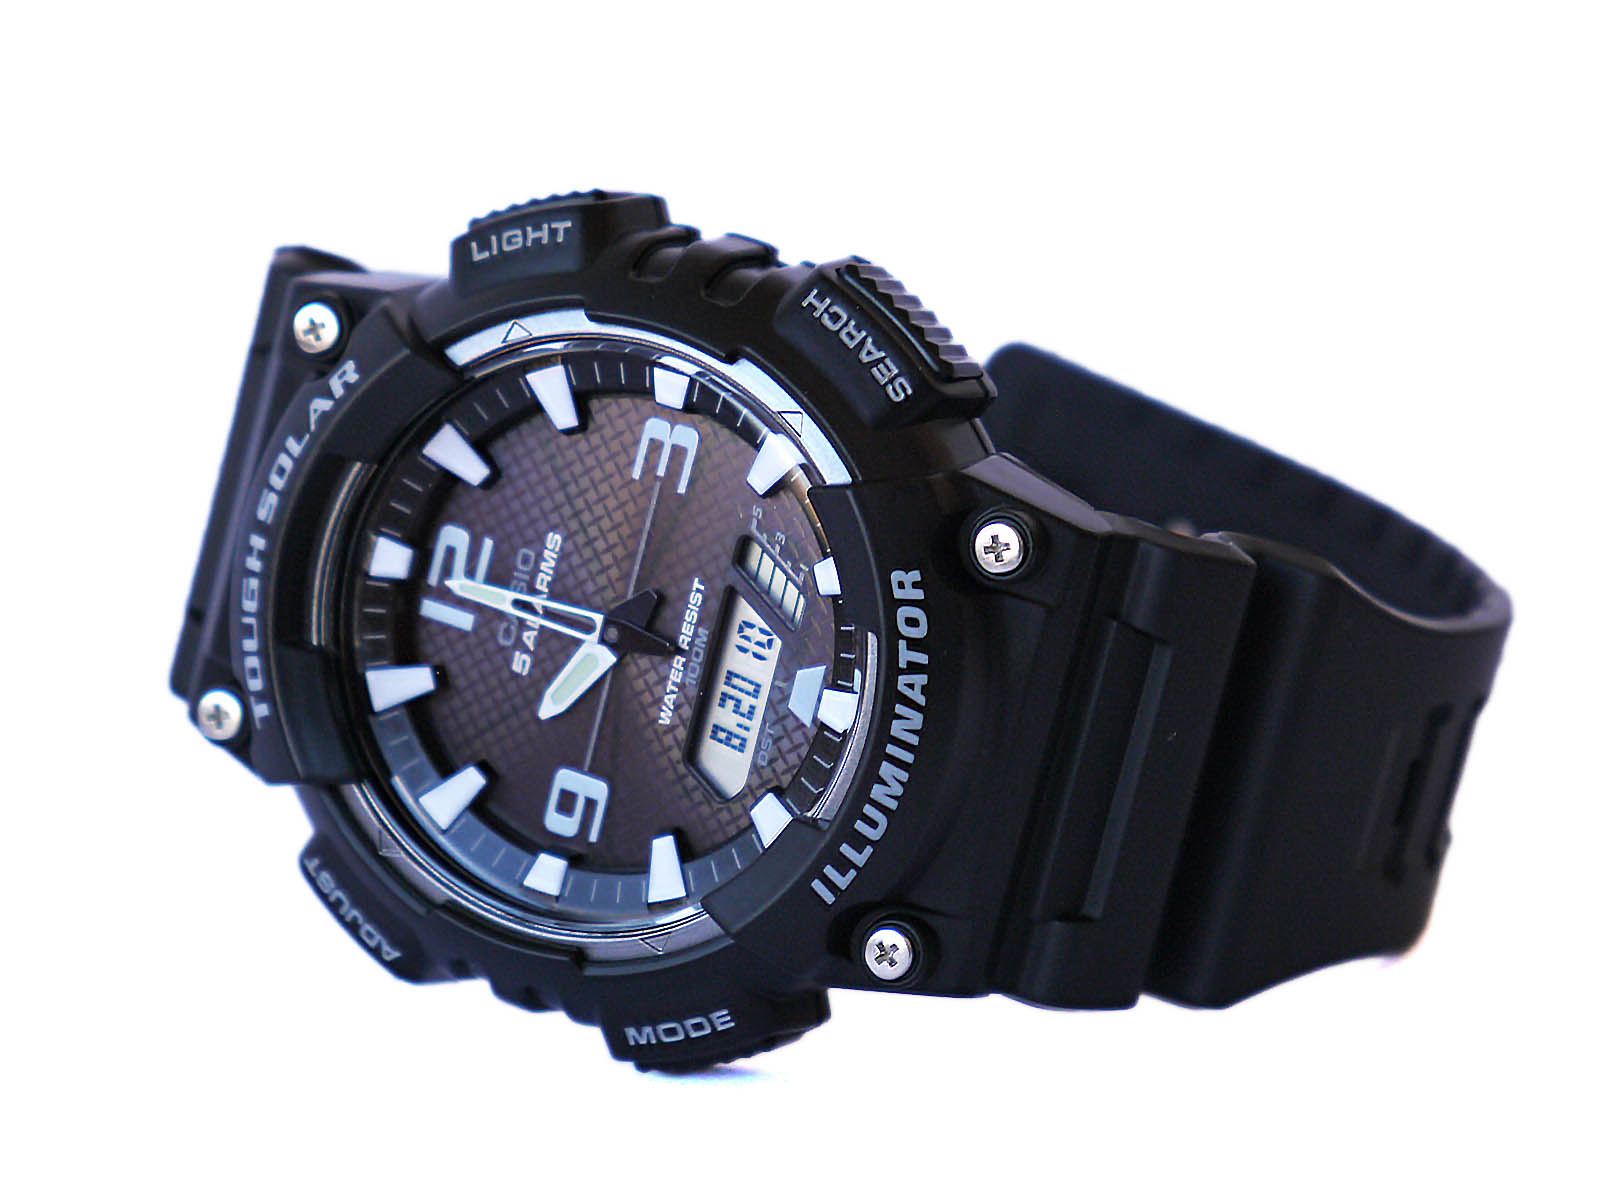 Casio-AQ-S810-1AV Tough Solar Watch ⋆ Quality Digi-Analog Watch High Gallery